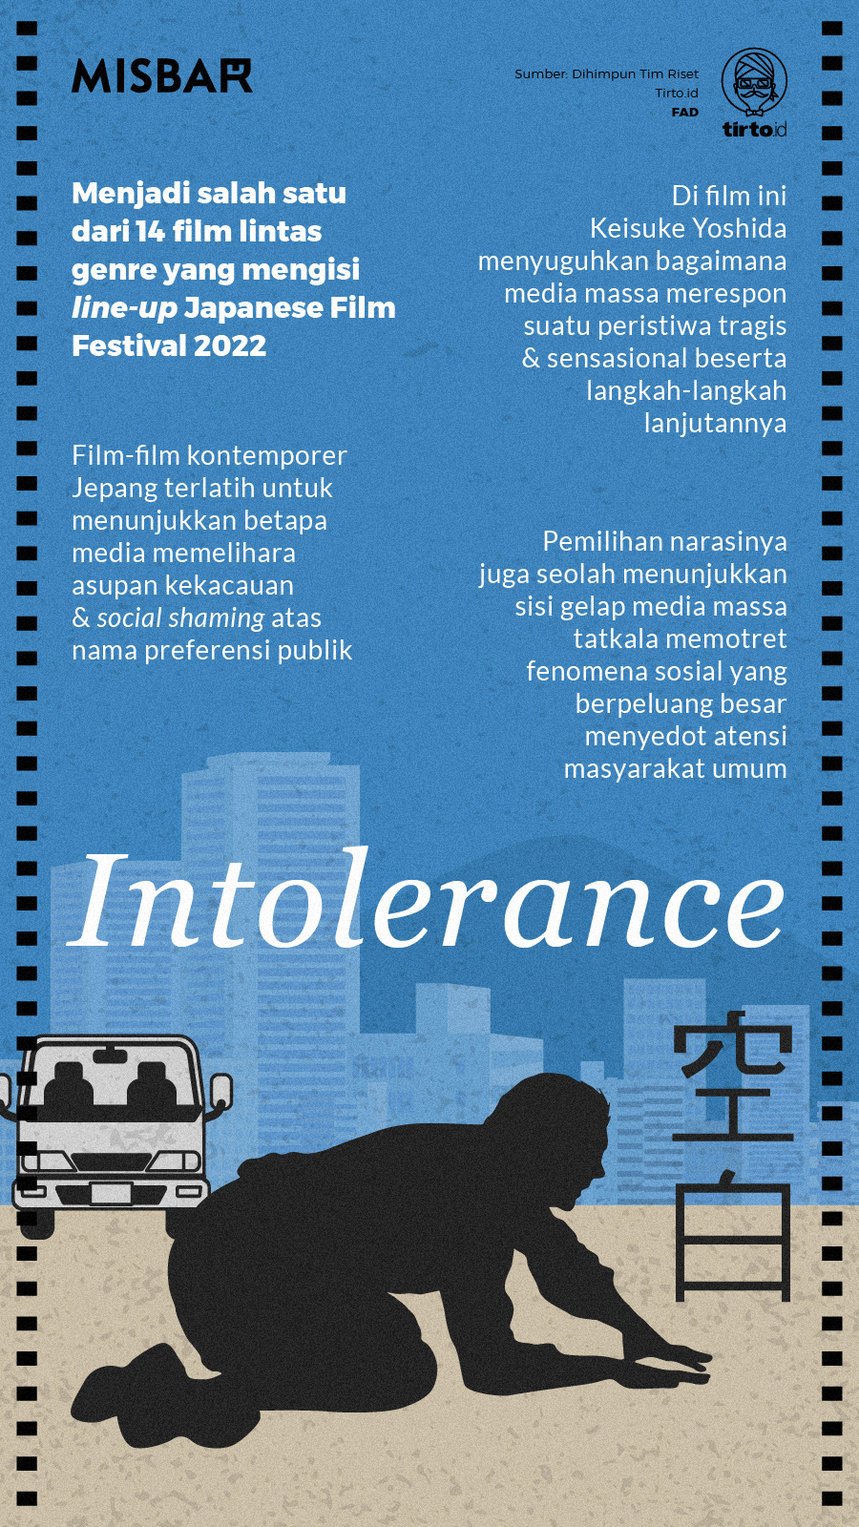 Infografik Misbar Intolerance